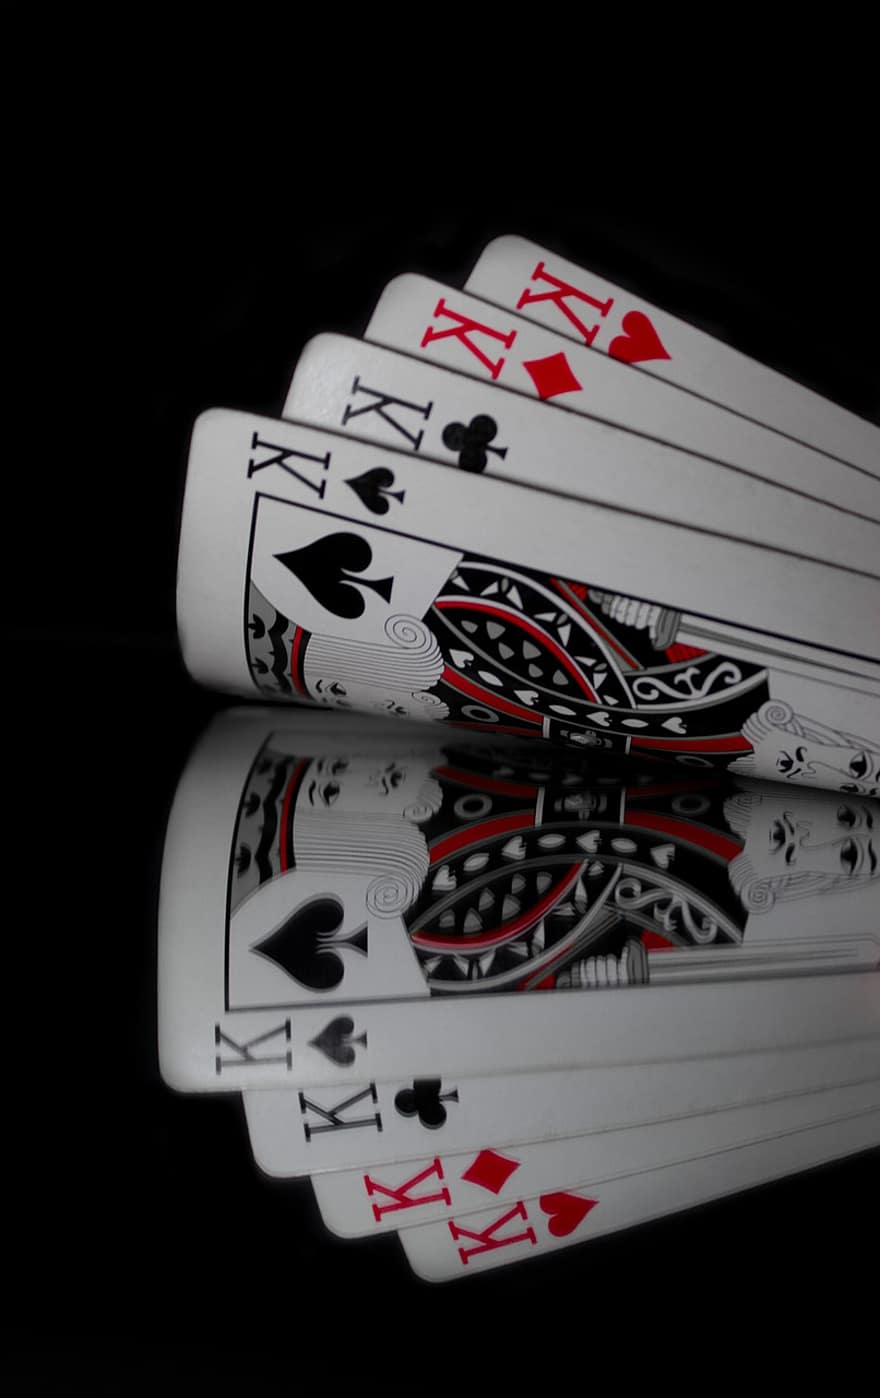 kort, gambling, refleksjon, poker, kortspill, kasino, ess, spille, flaks, spade, suksess